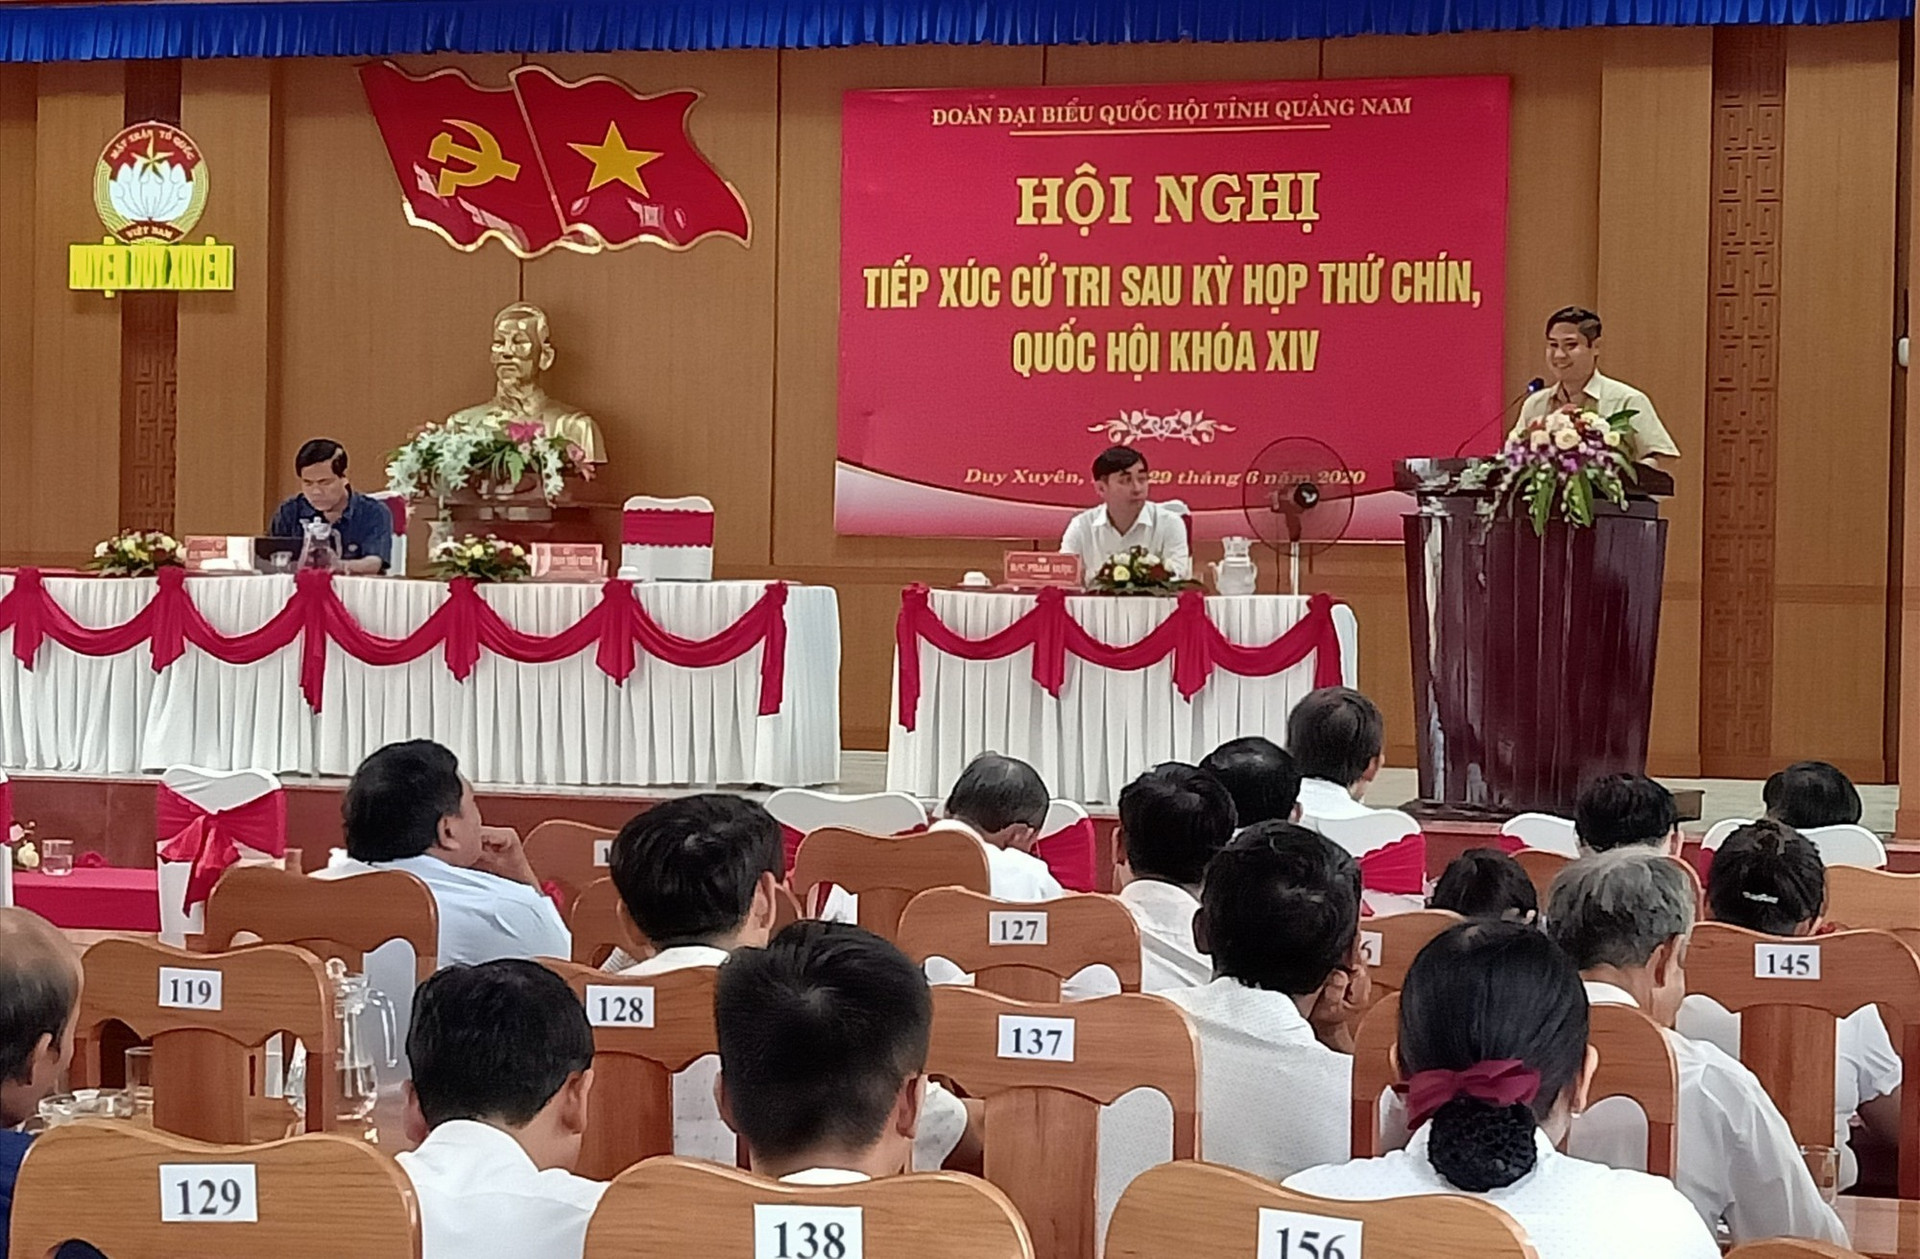 Ông Phan Thái Bình - Phó trưởng Đoàn ĐBQH tỉnh giải đáp một số thắc mắc, kiến nghị của cử tri. Ảnh: HOÀNG LIÊN